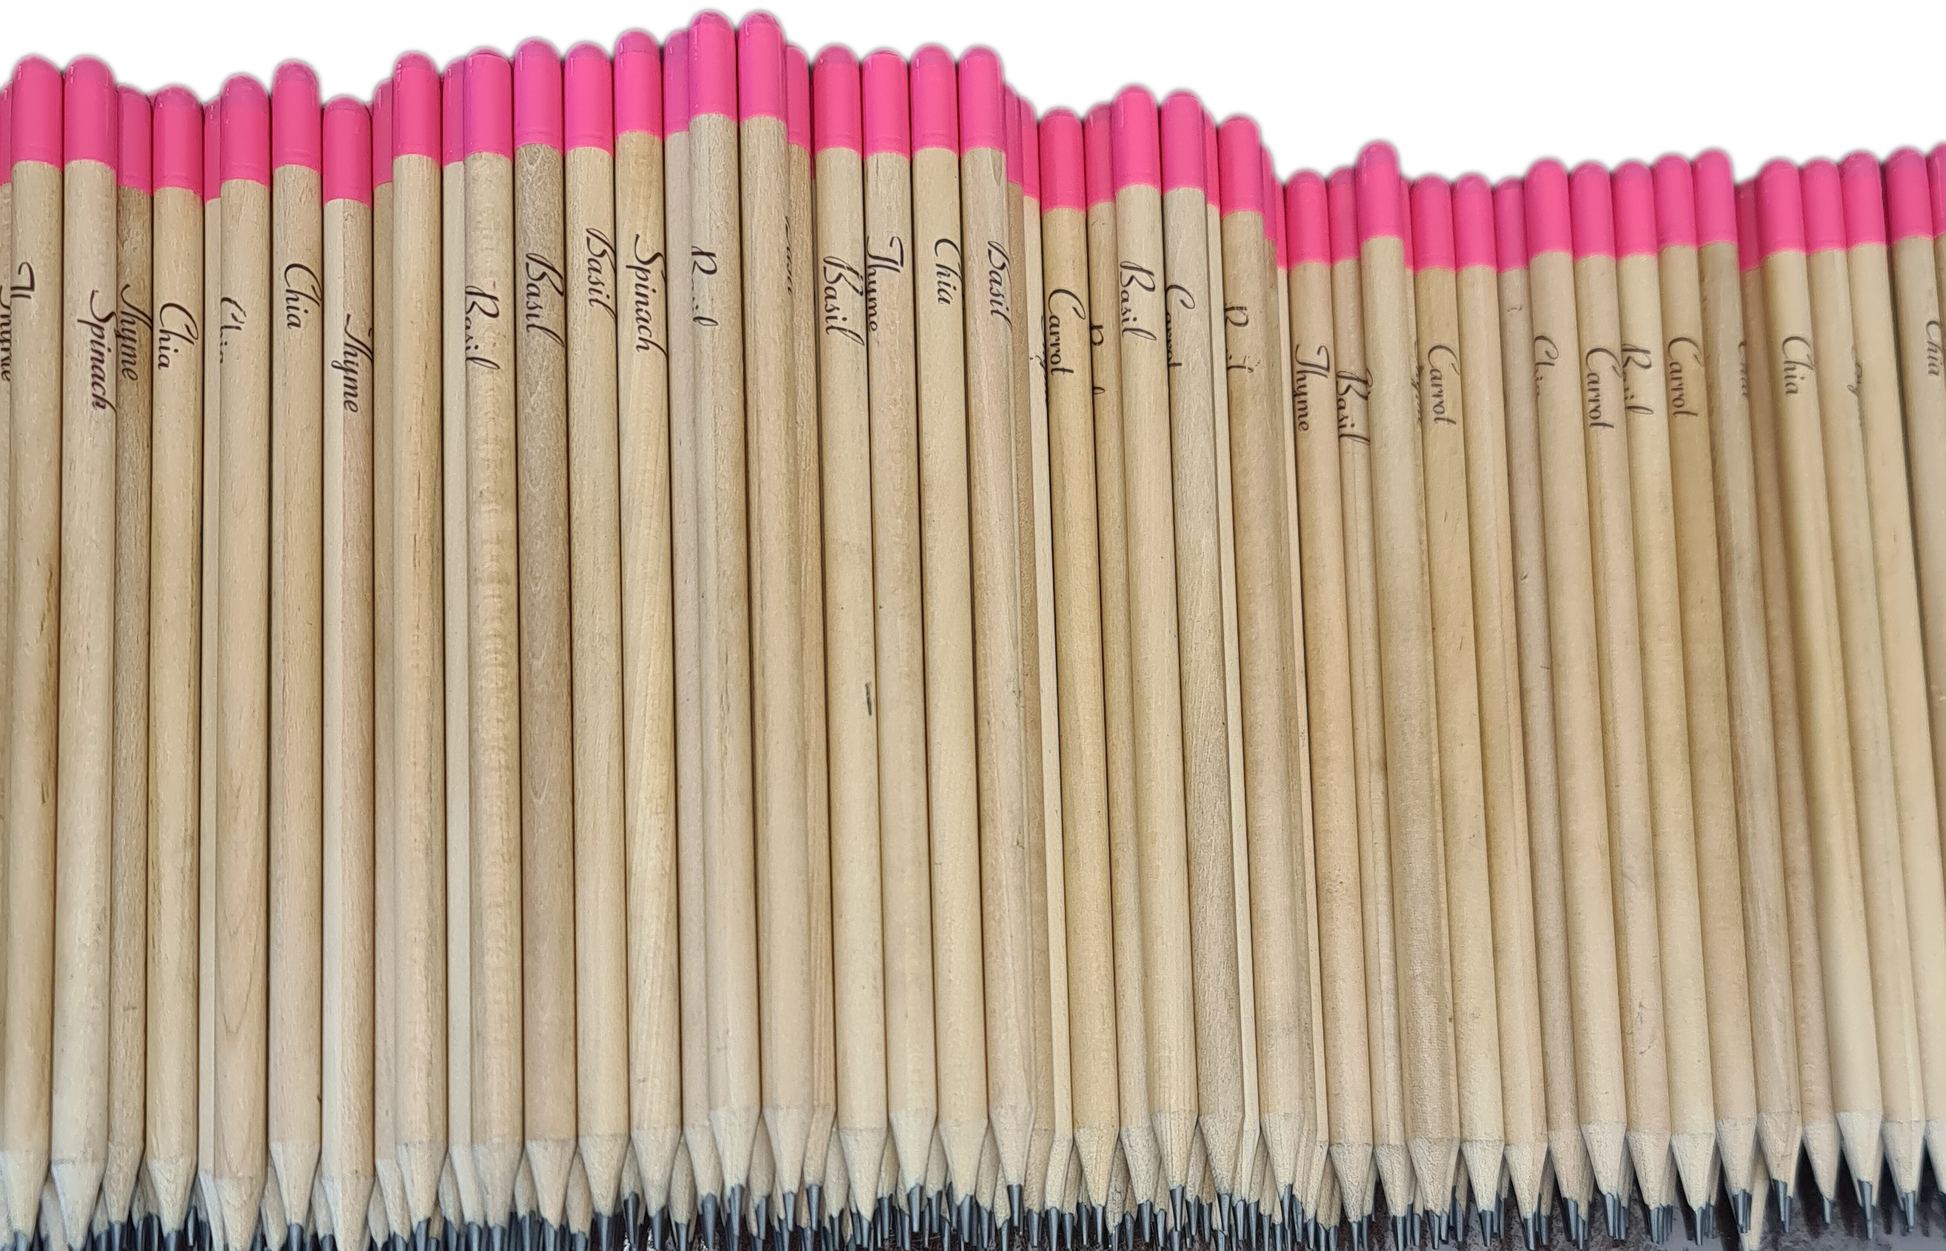 Seed pencils - pink tip.  